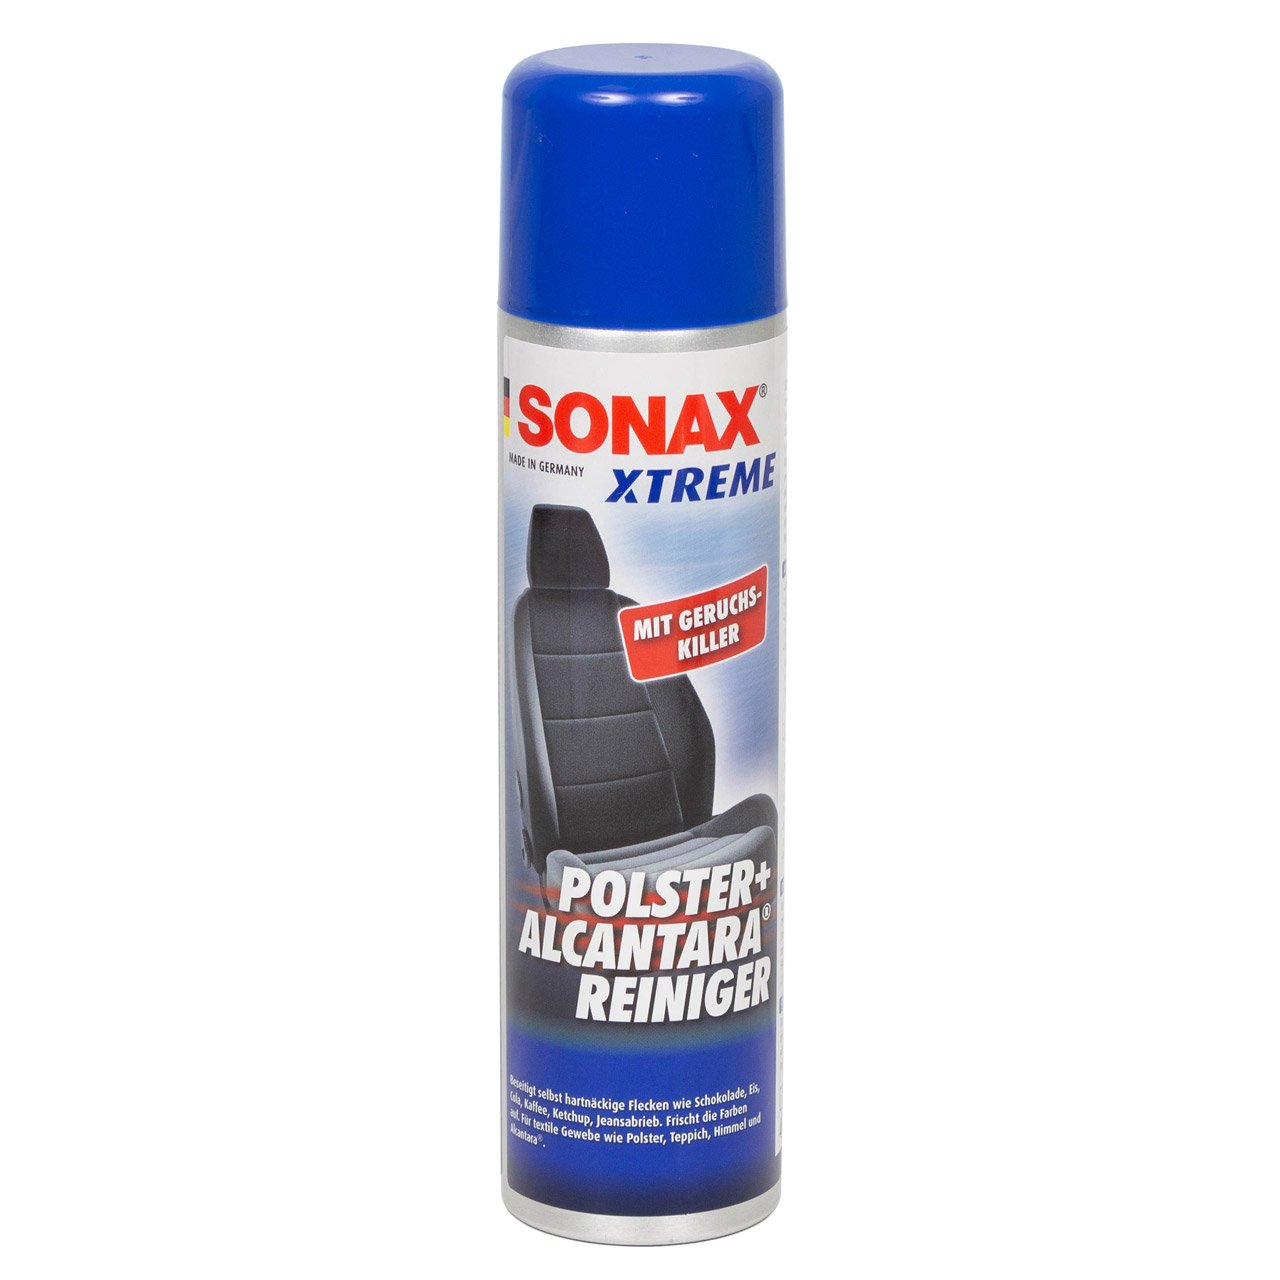 3x 400ml SONAX Xtreme Polster- & AlcantaraReiniger Geruchskiller Reiniger 206300